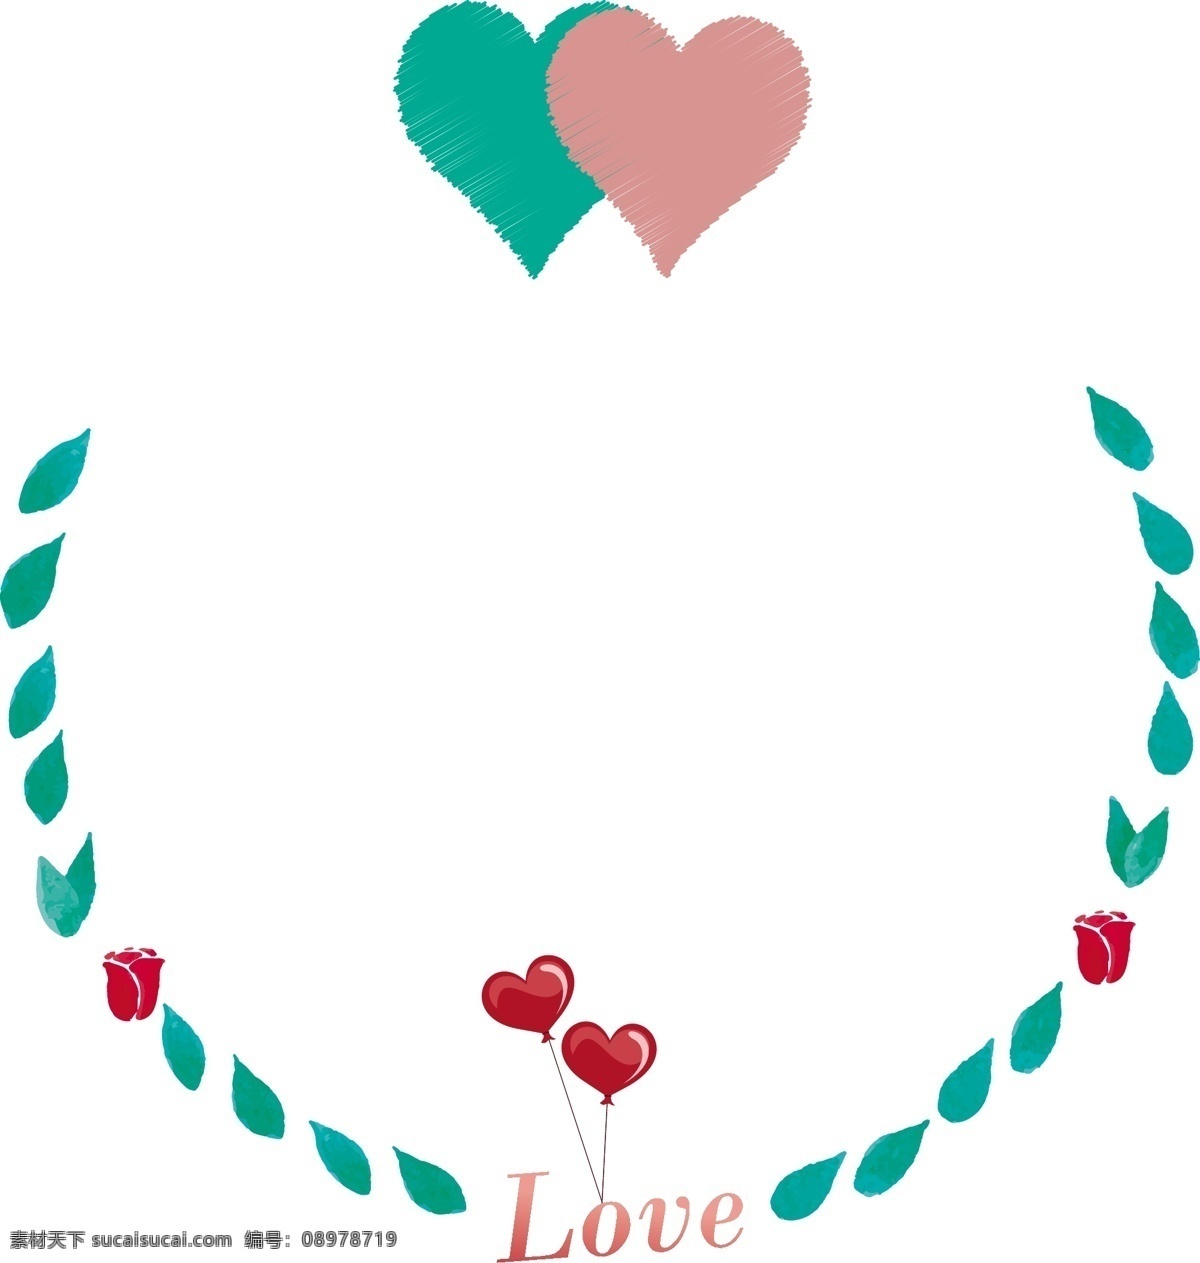 情人节 心心相印 爱情 圆 框 love 矢量 边框 爱心 玫瑰 叶子 绿叶 气球 爱 一箭穿心 爱情气球 红色 绿色 粉色 圆形边框 节日 西洋节日 花朵